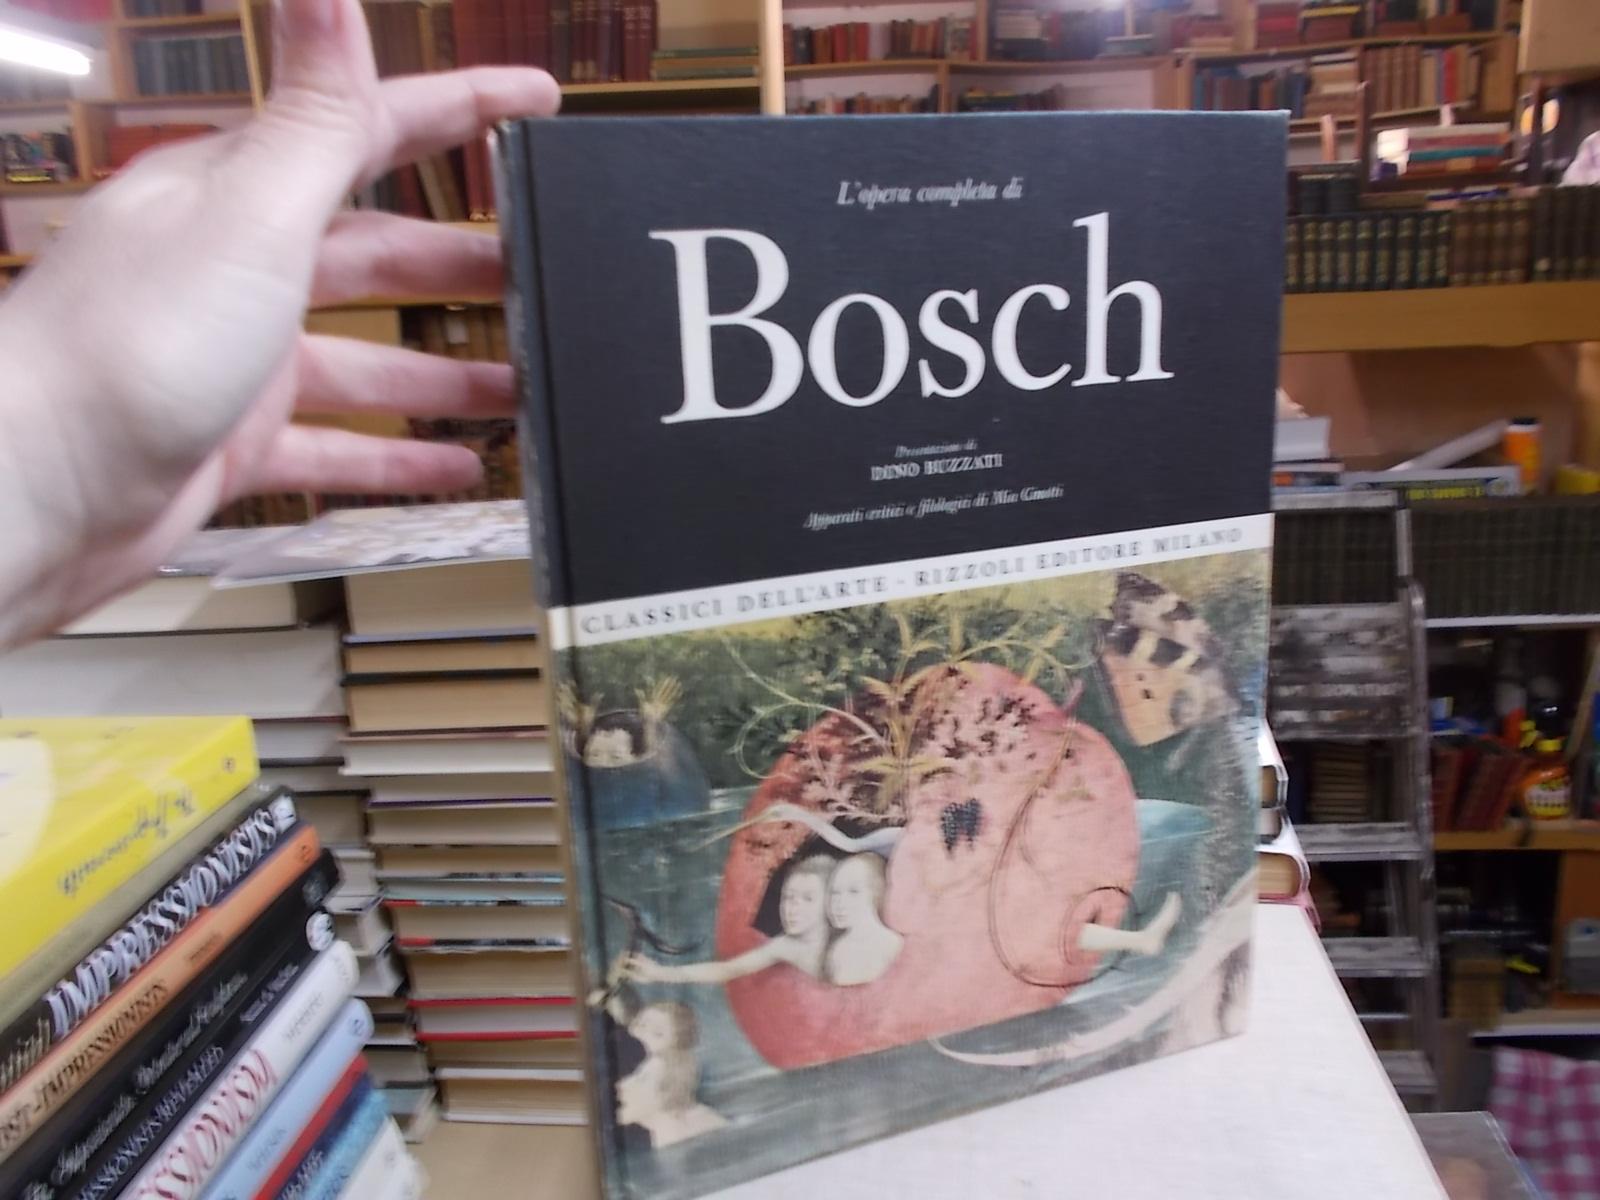 Bosch - Buzzati, Dino